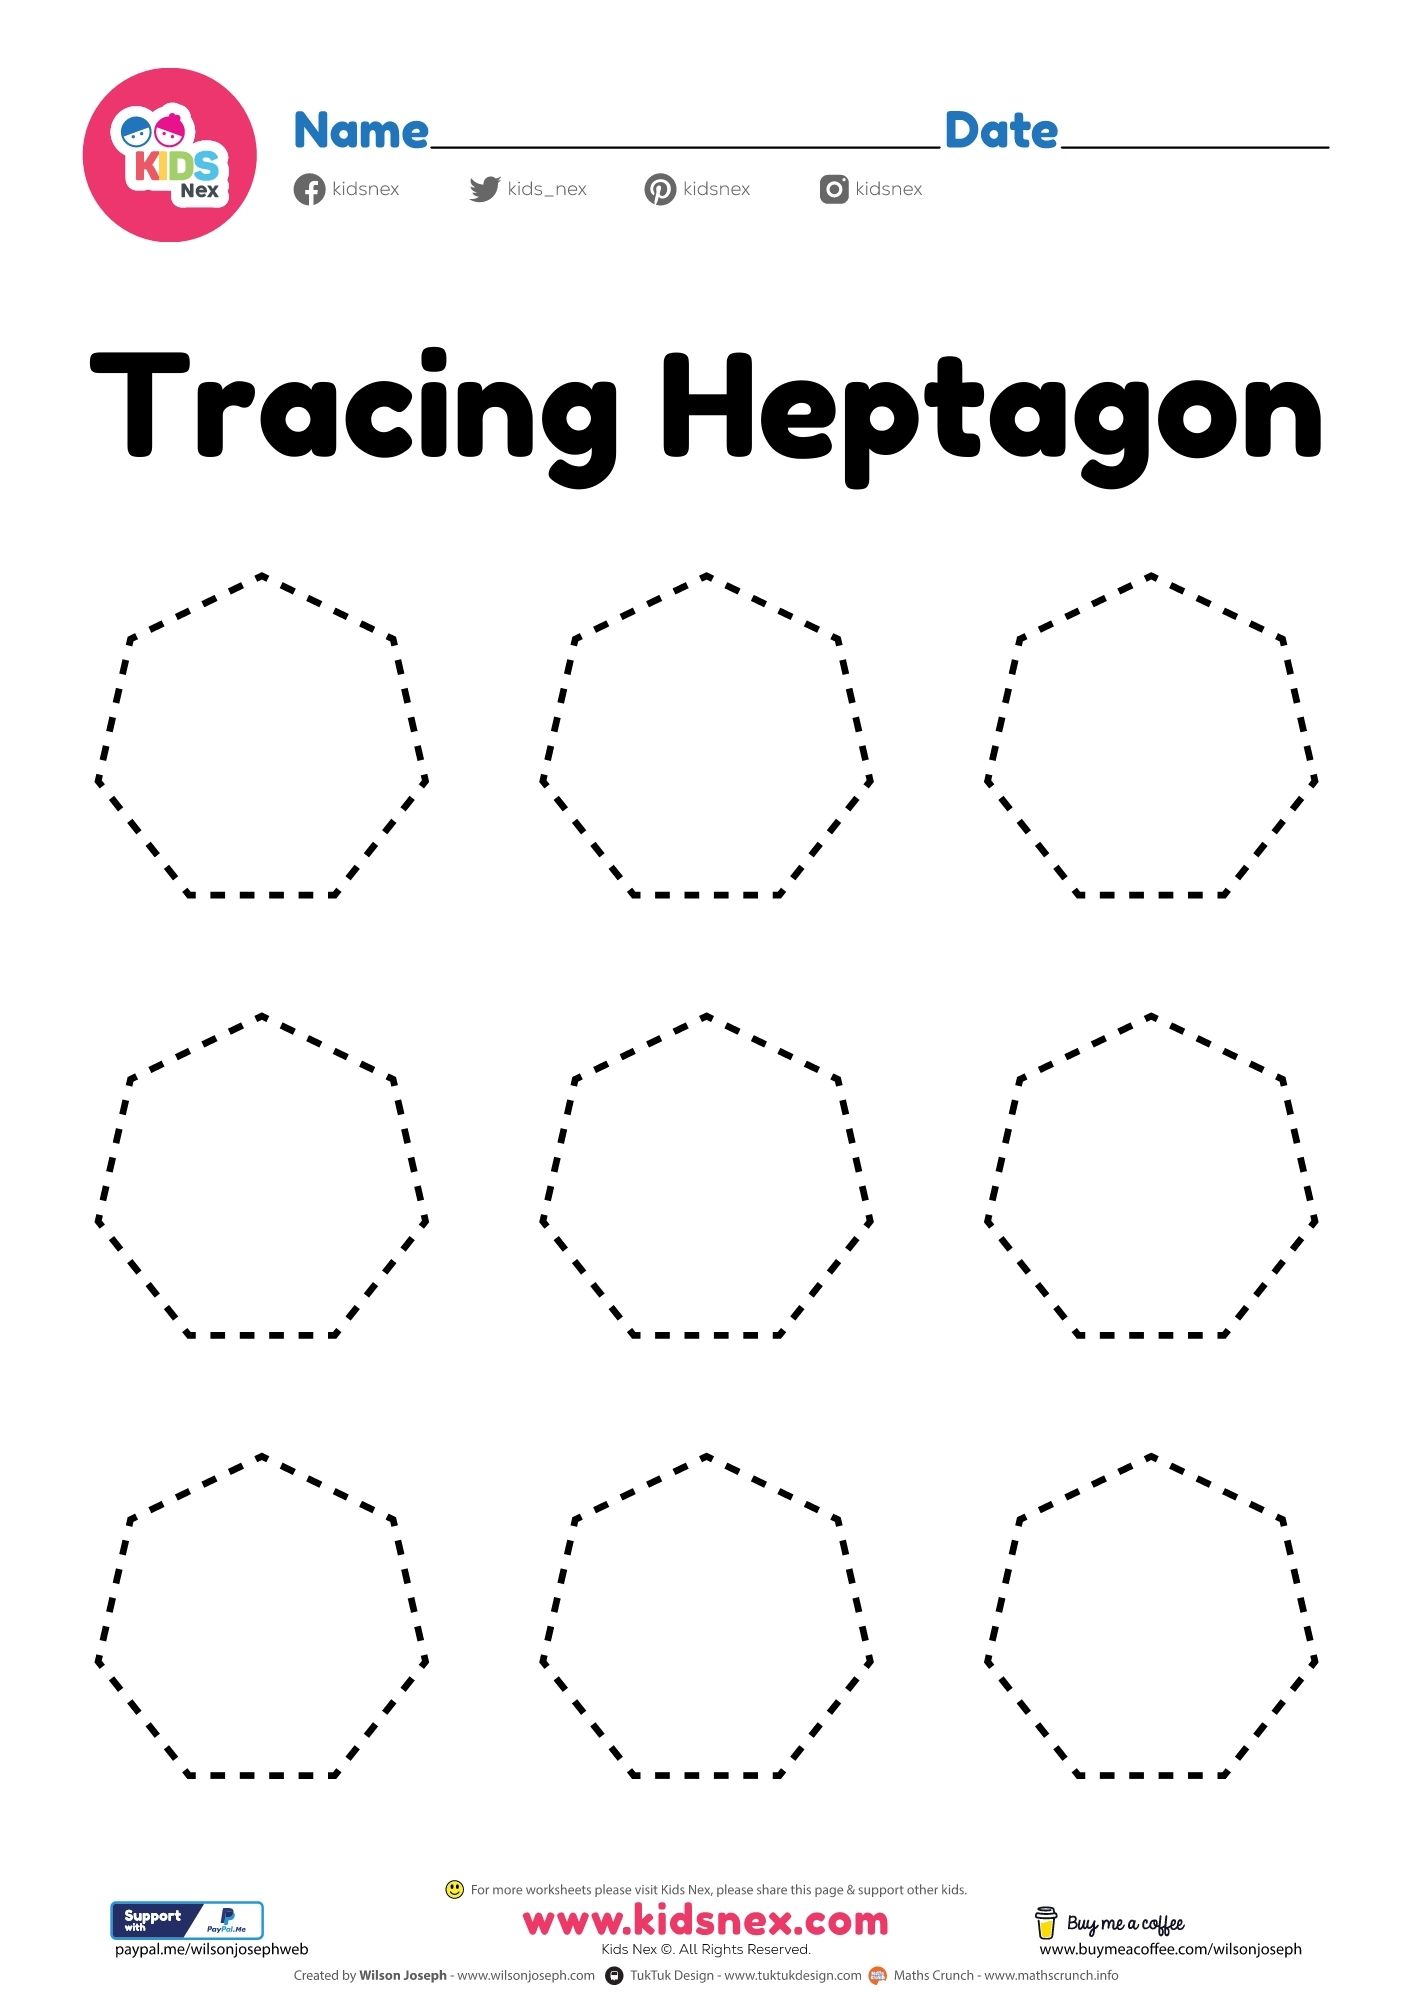 Heptagon Heptagon Software